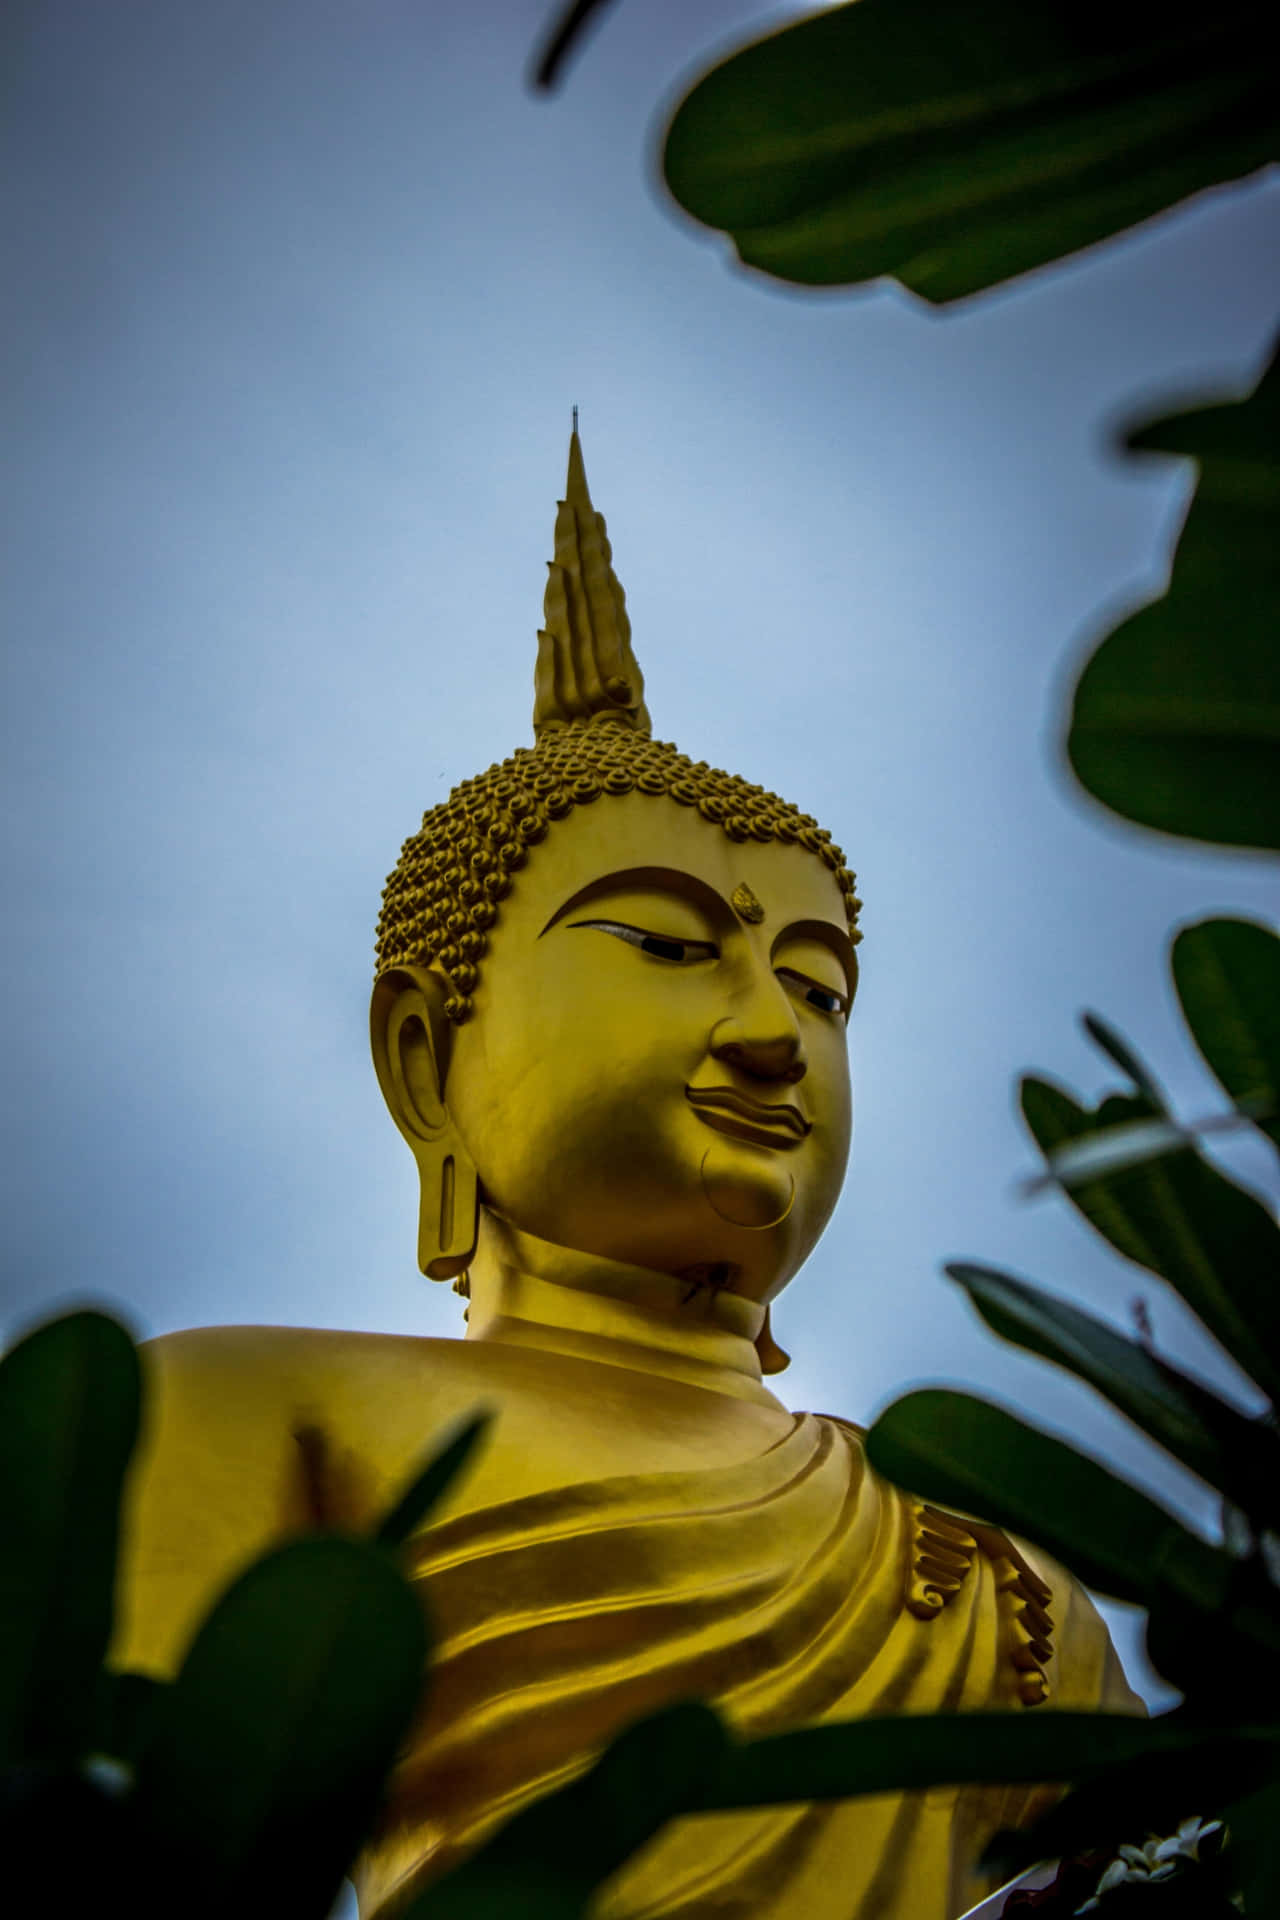 The Enlightened One - Gautama Buddha